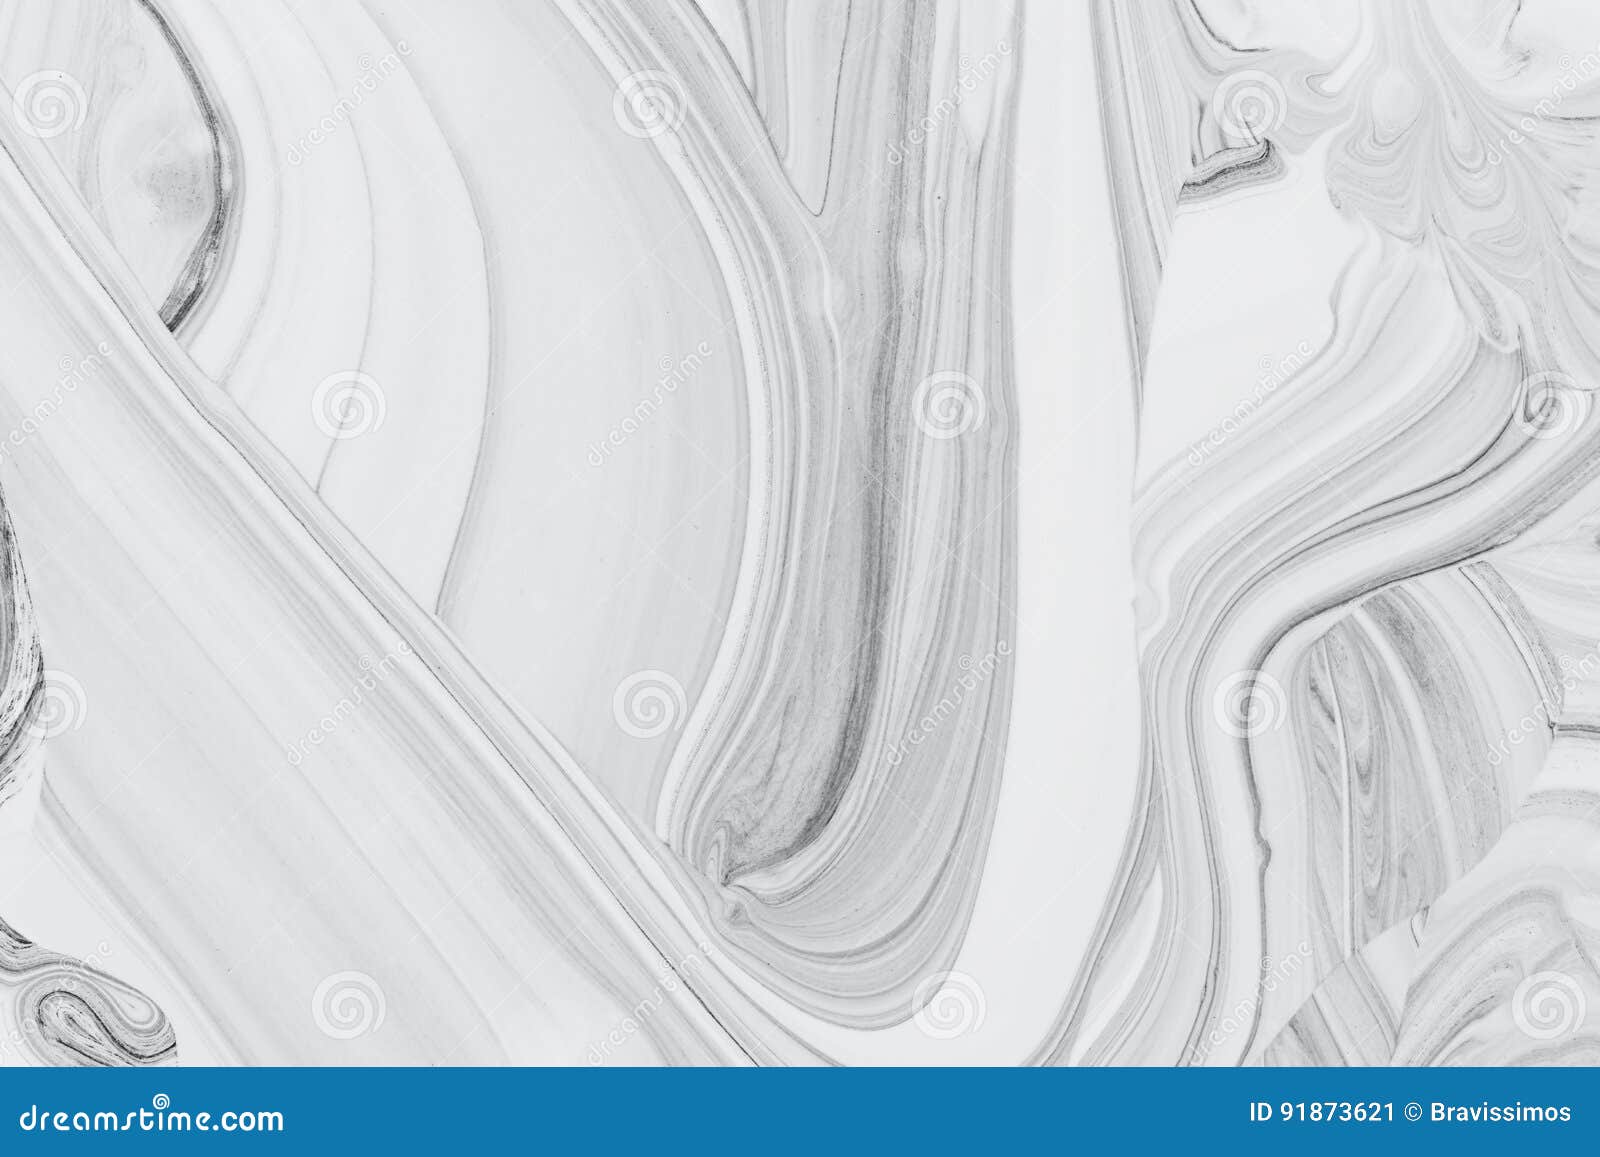 Peinture d'huile minérale de fond, blanche et noire abstraite sur l'eau. Peinture de marbre d'huile minérale de texture de modèle de fond, blanche et noire abstraite sur l'eau, concept en pierre de goutte